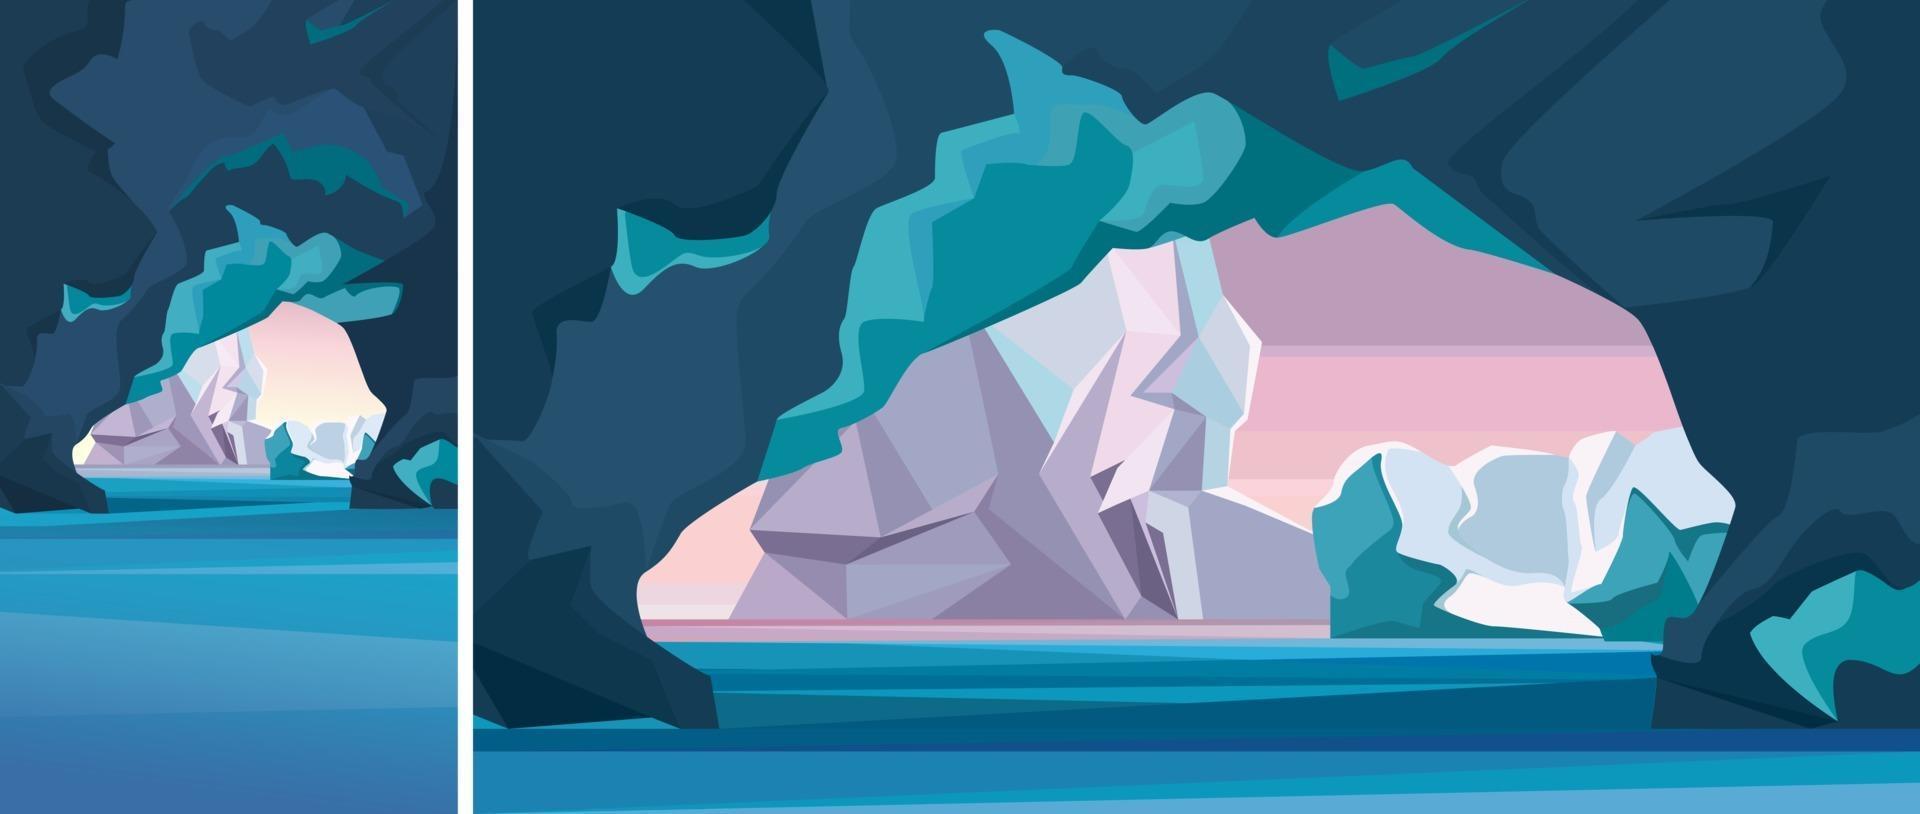 paysage arctique avec grotte de glace en orientation verticale et horizontale. vecteur